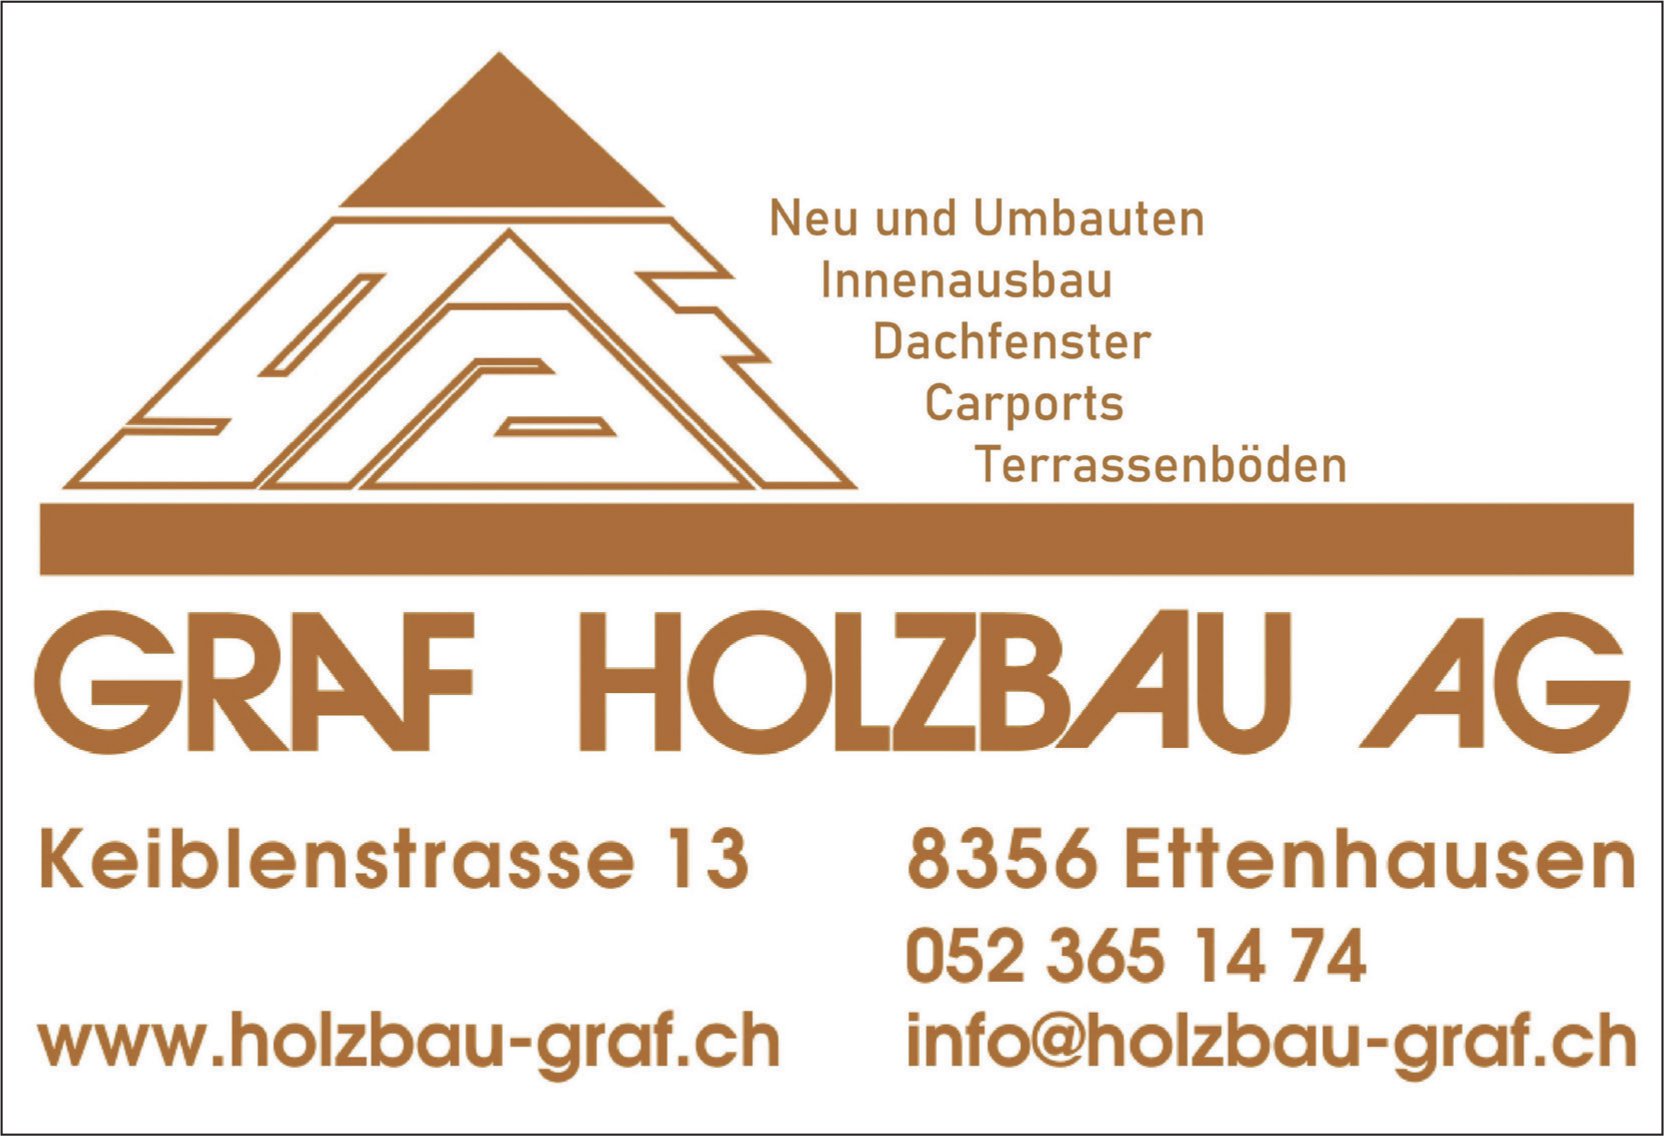 Graf Holzbau AG, Ettenhausen - Neu und Umbauten, Innenausbau, Dachfenster,  Carports, Terrassenboden